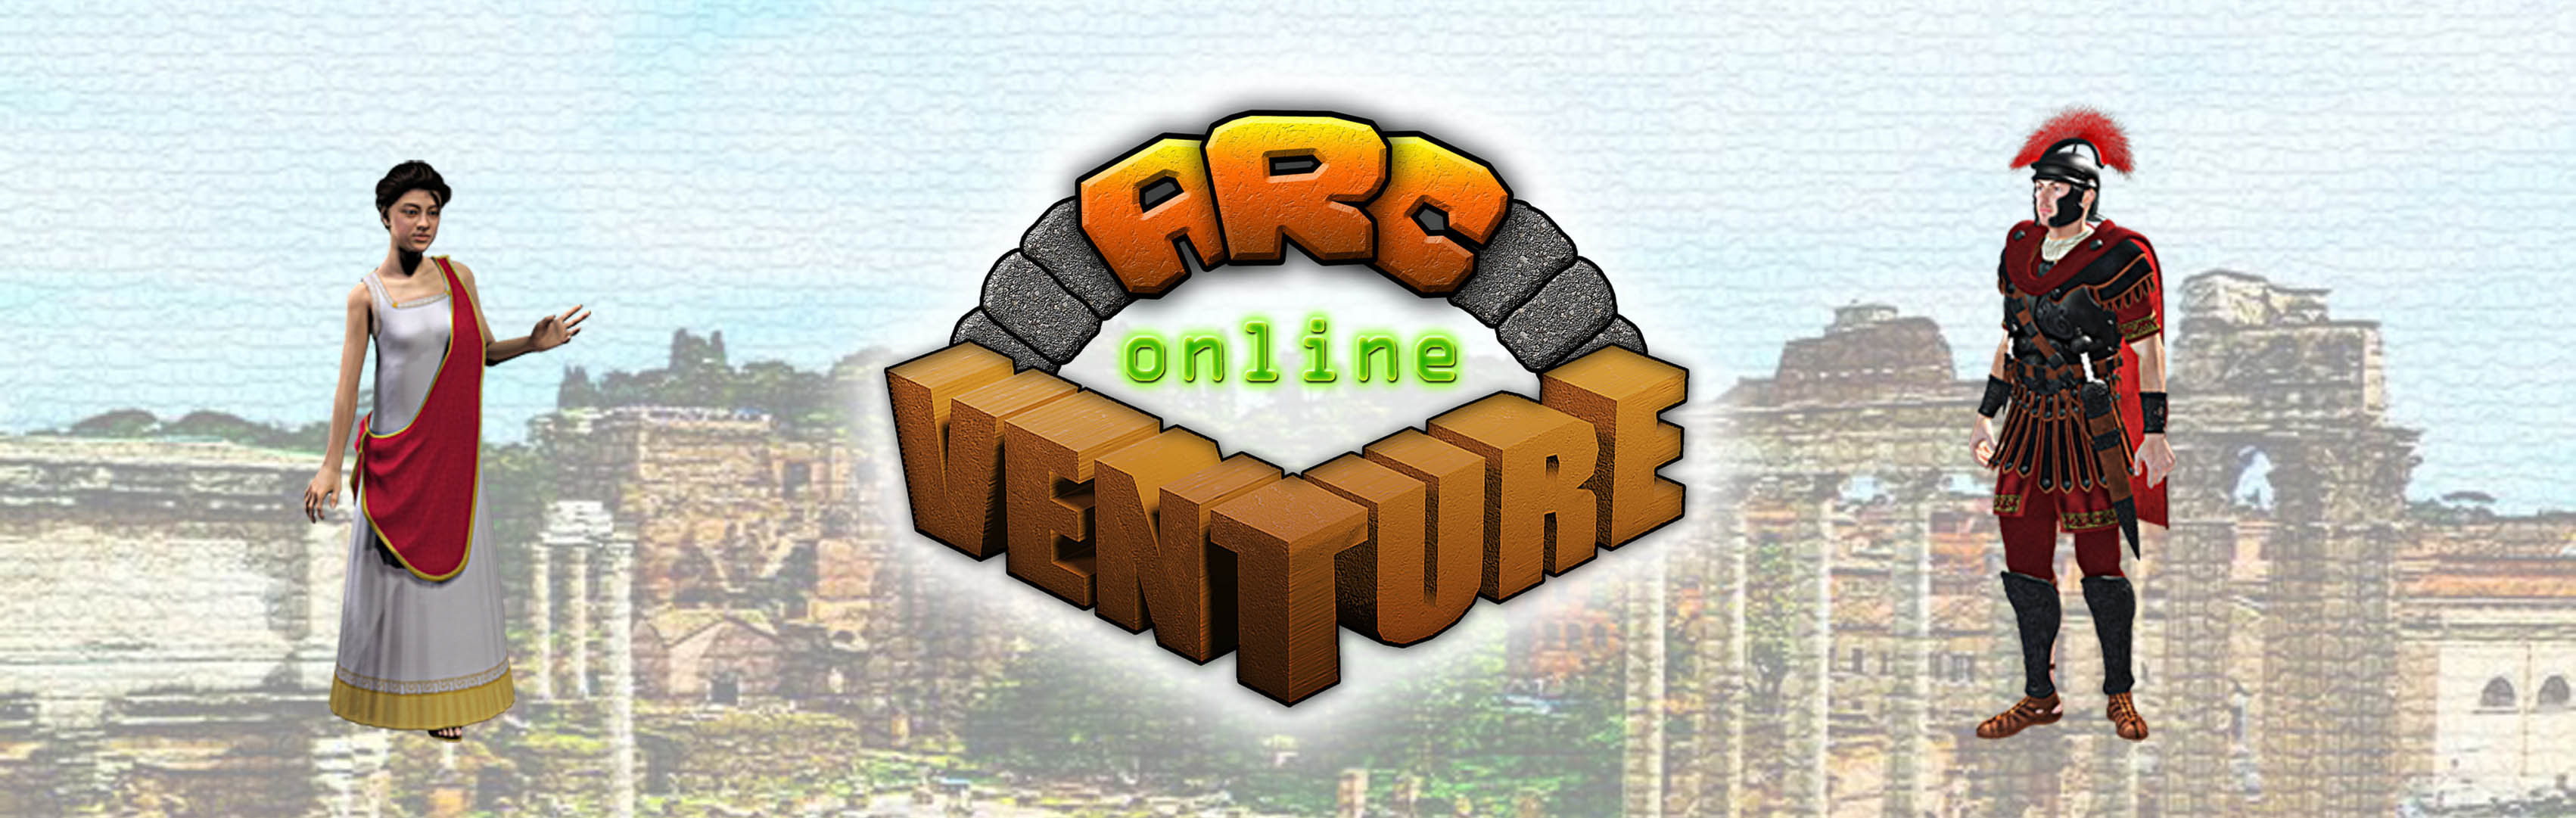 ArcVenture Online